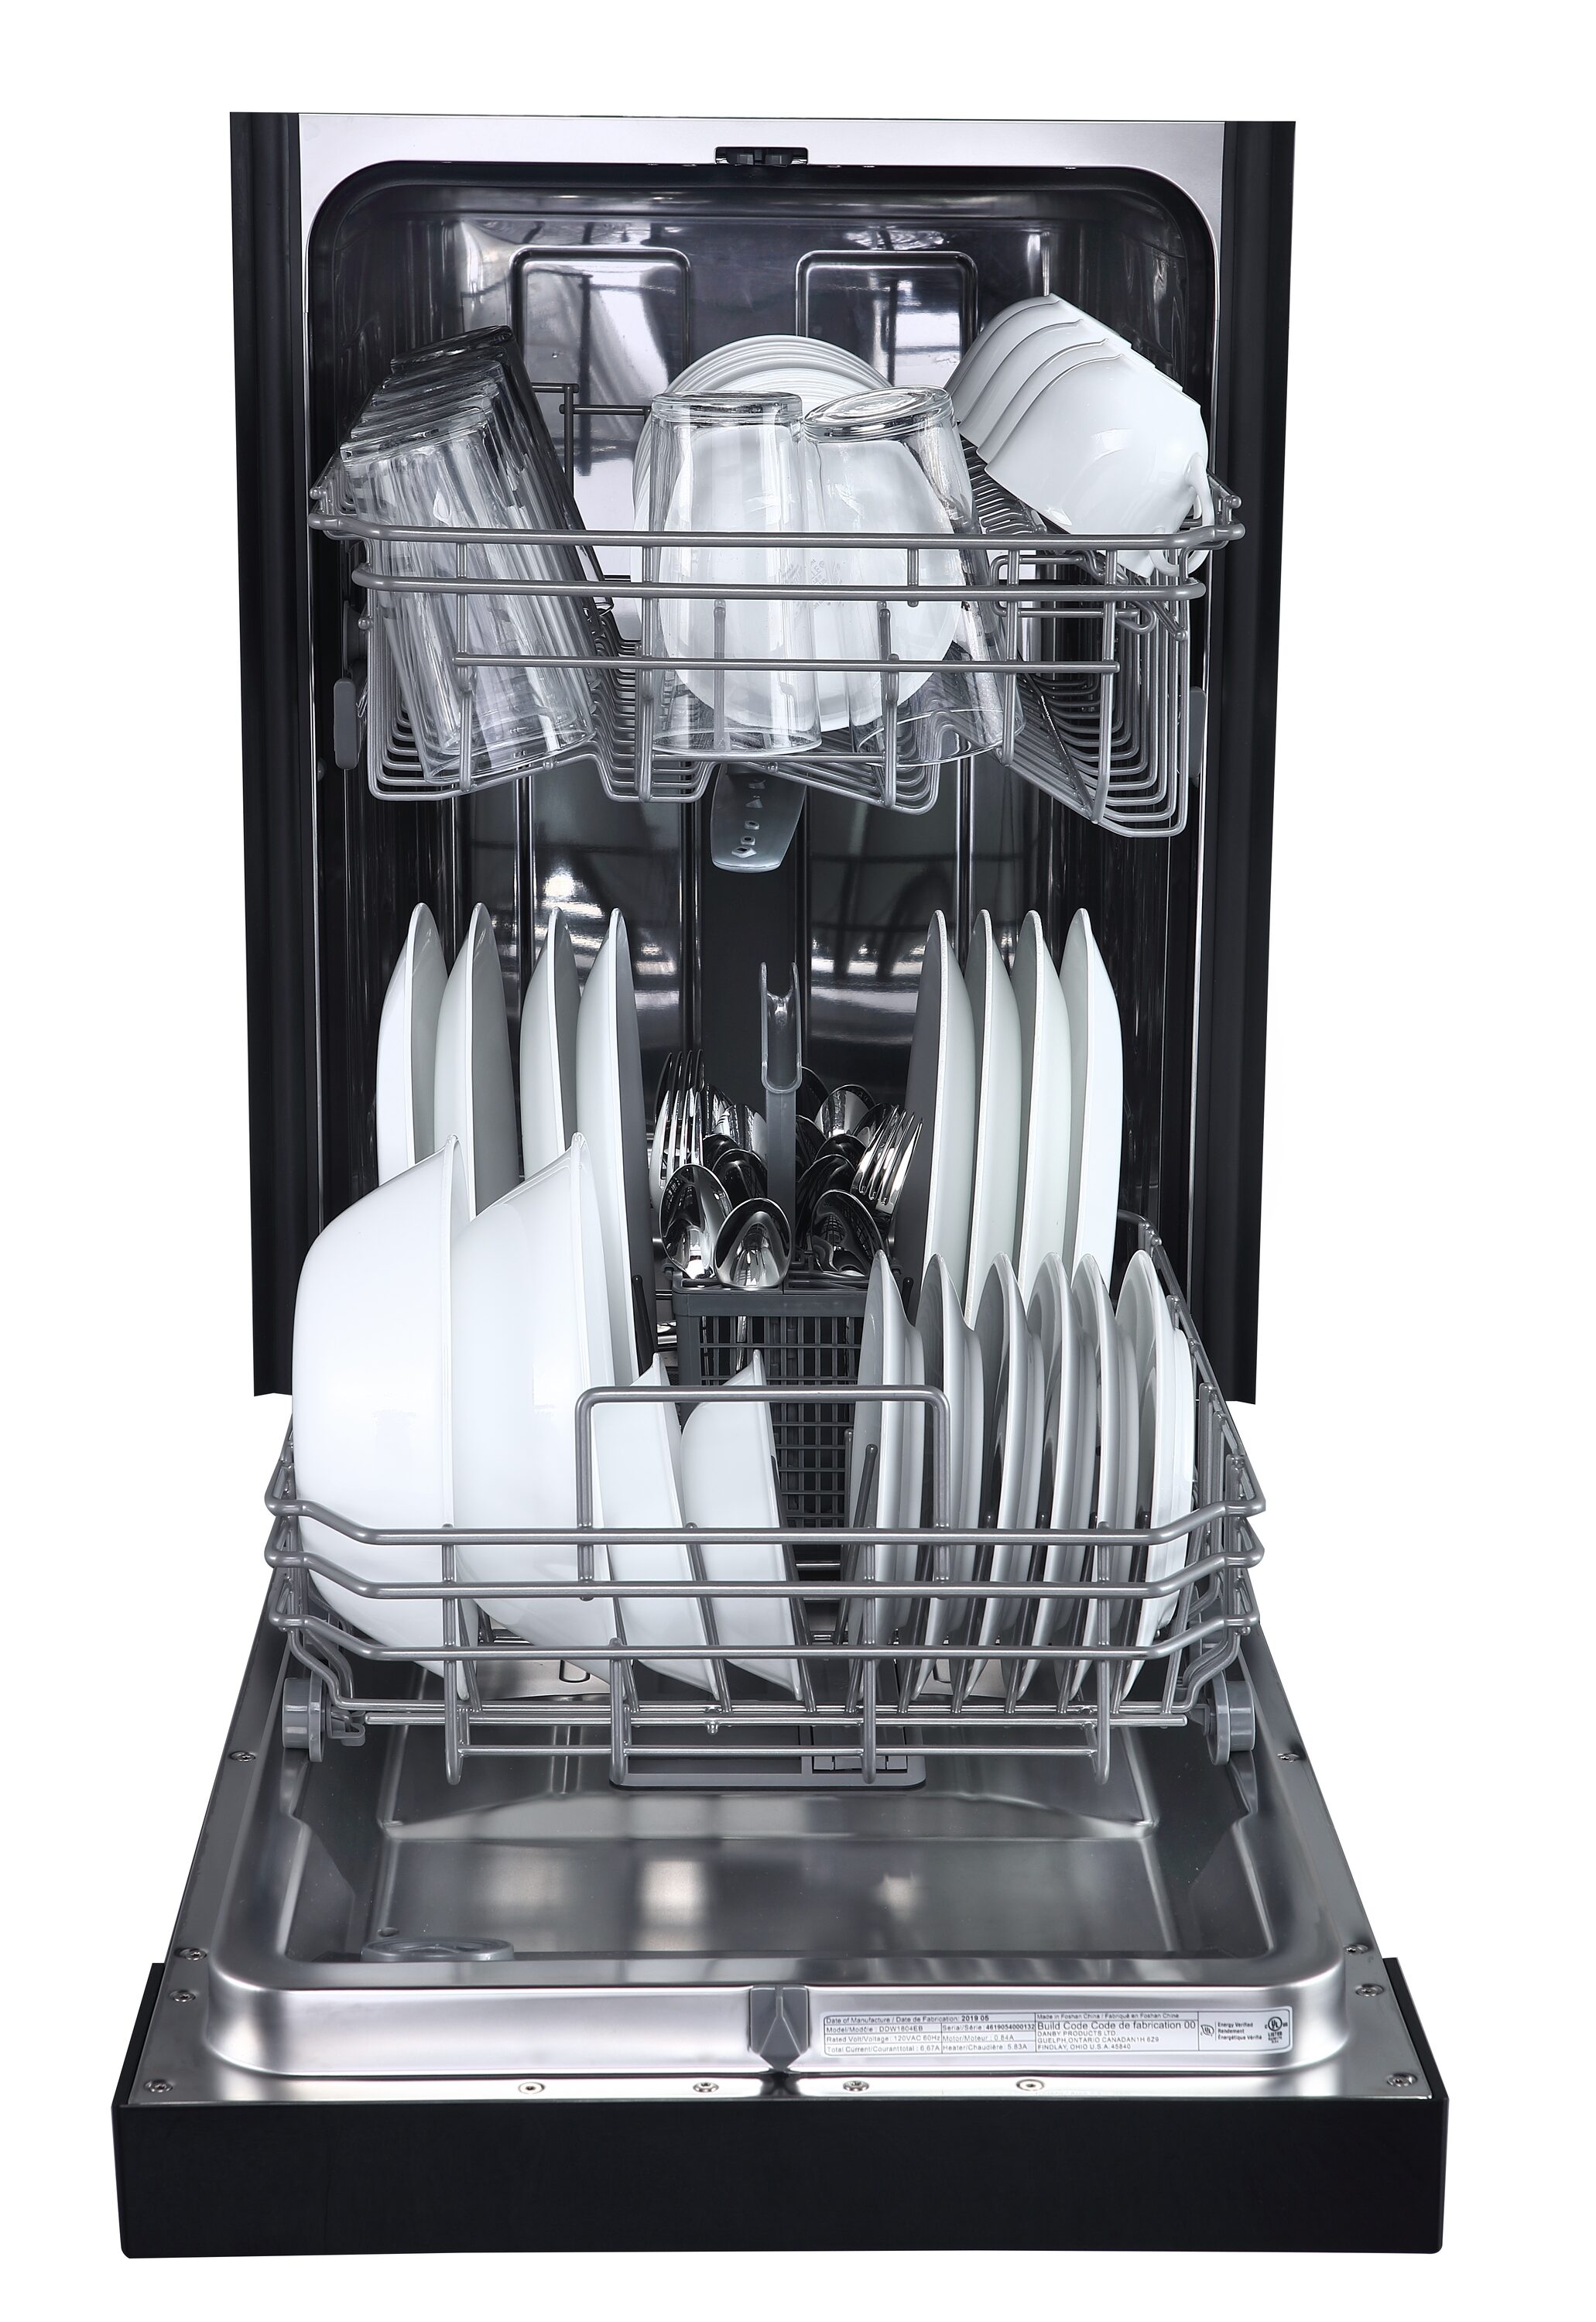 Danby 18 Wide Built-in Dishwasher in White - DDW1804EW